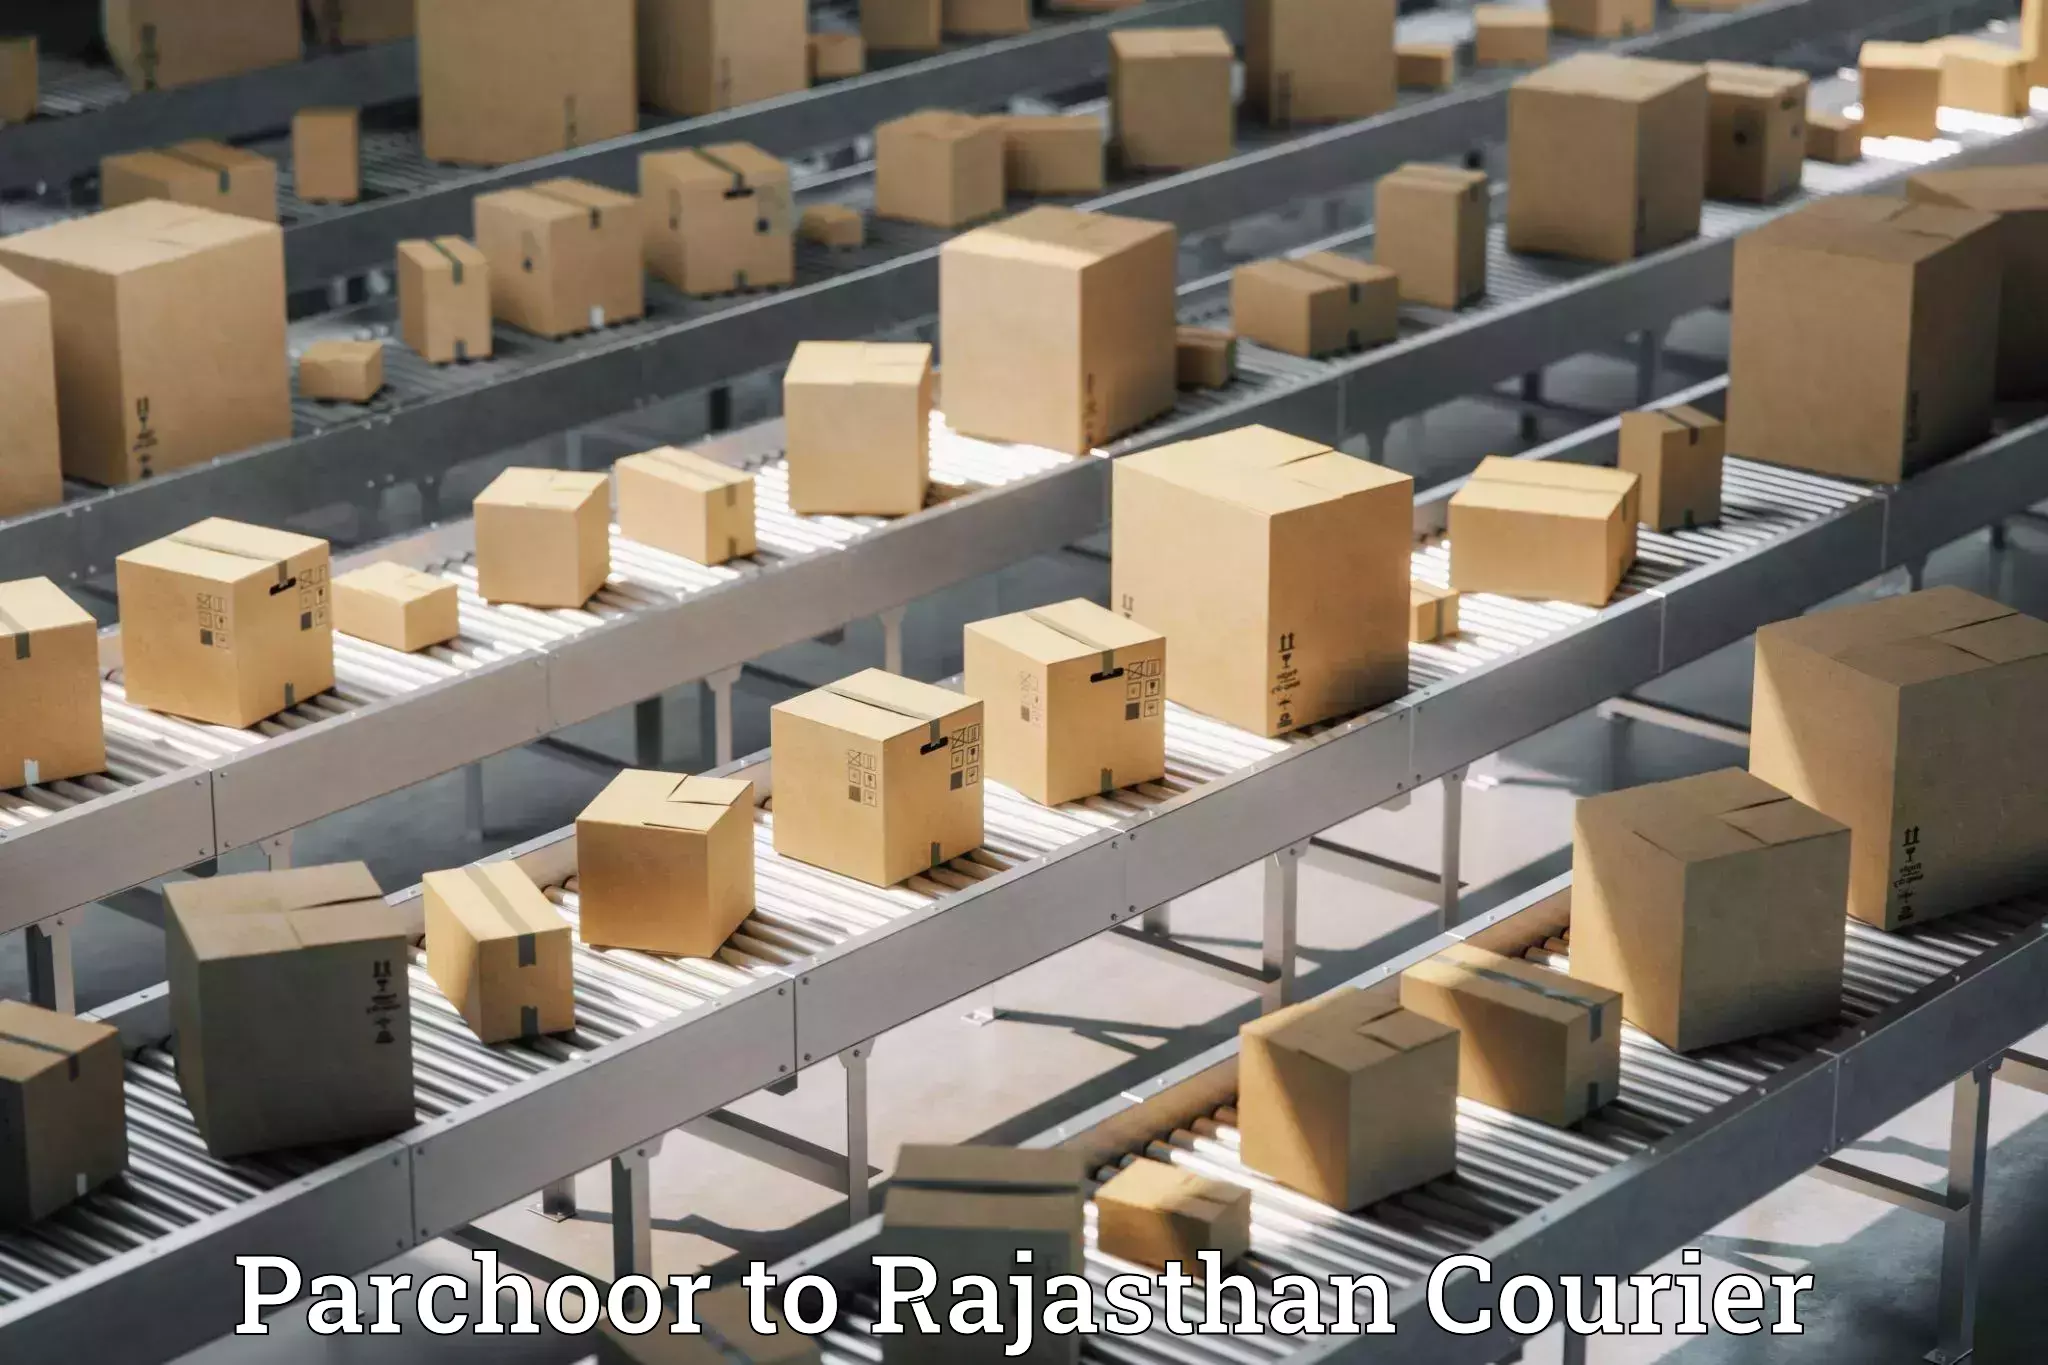 24-hour courier service Parchoor to Mandalgarh